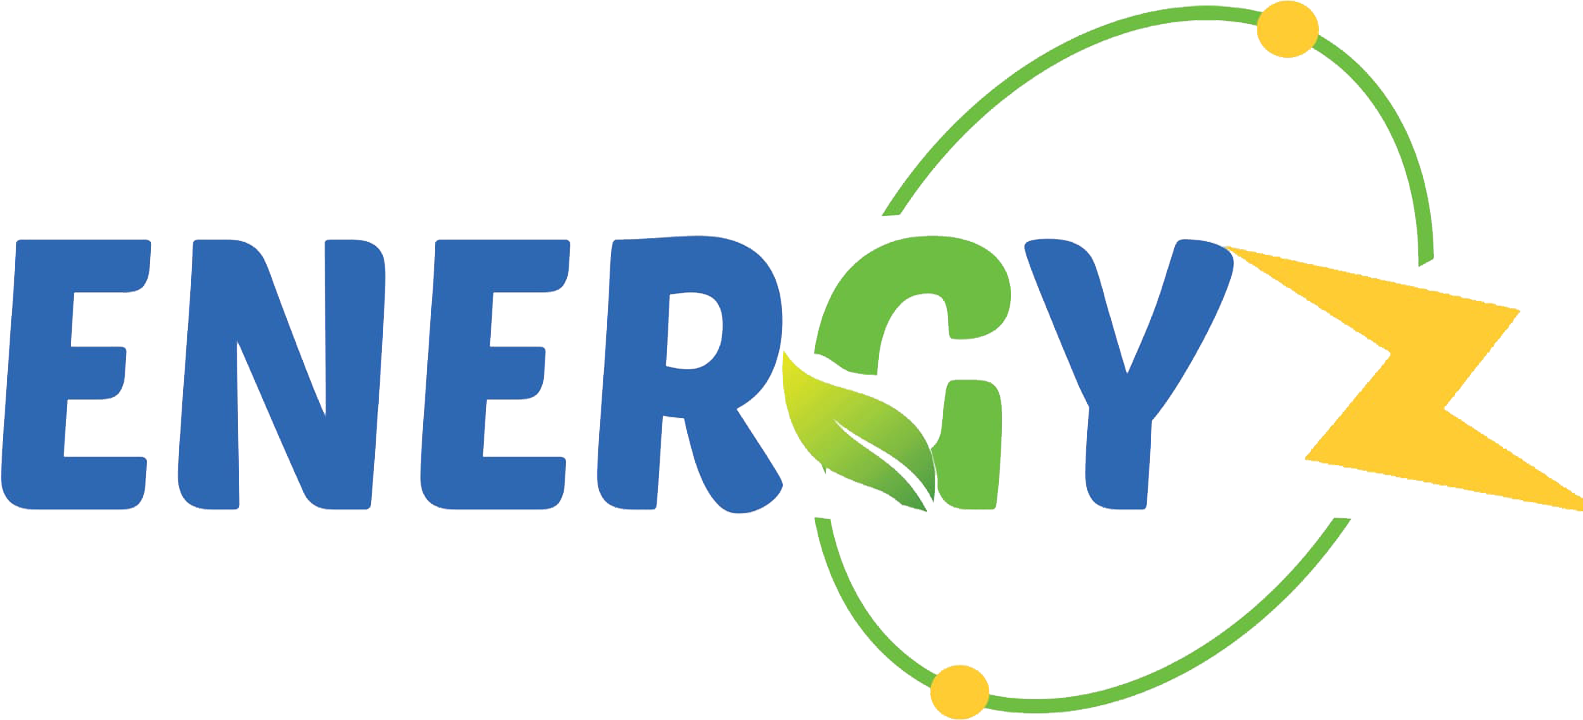 Energyz -transition écologique rentable et responsable